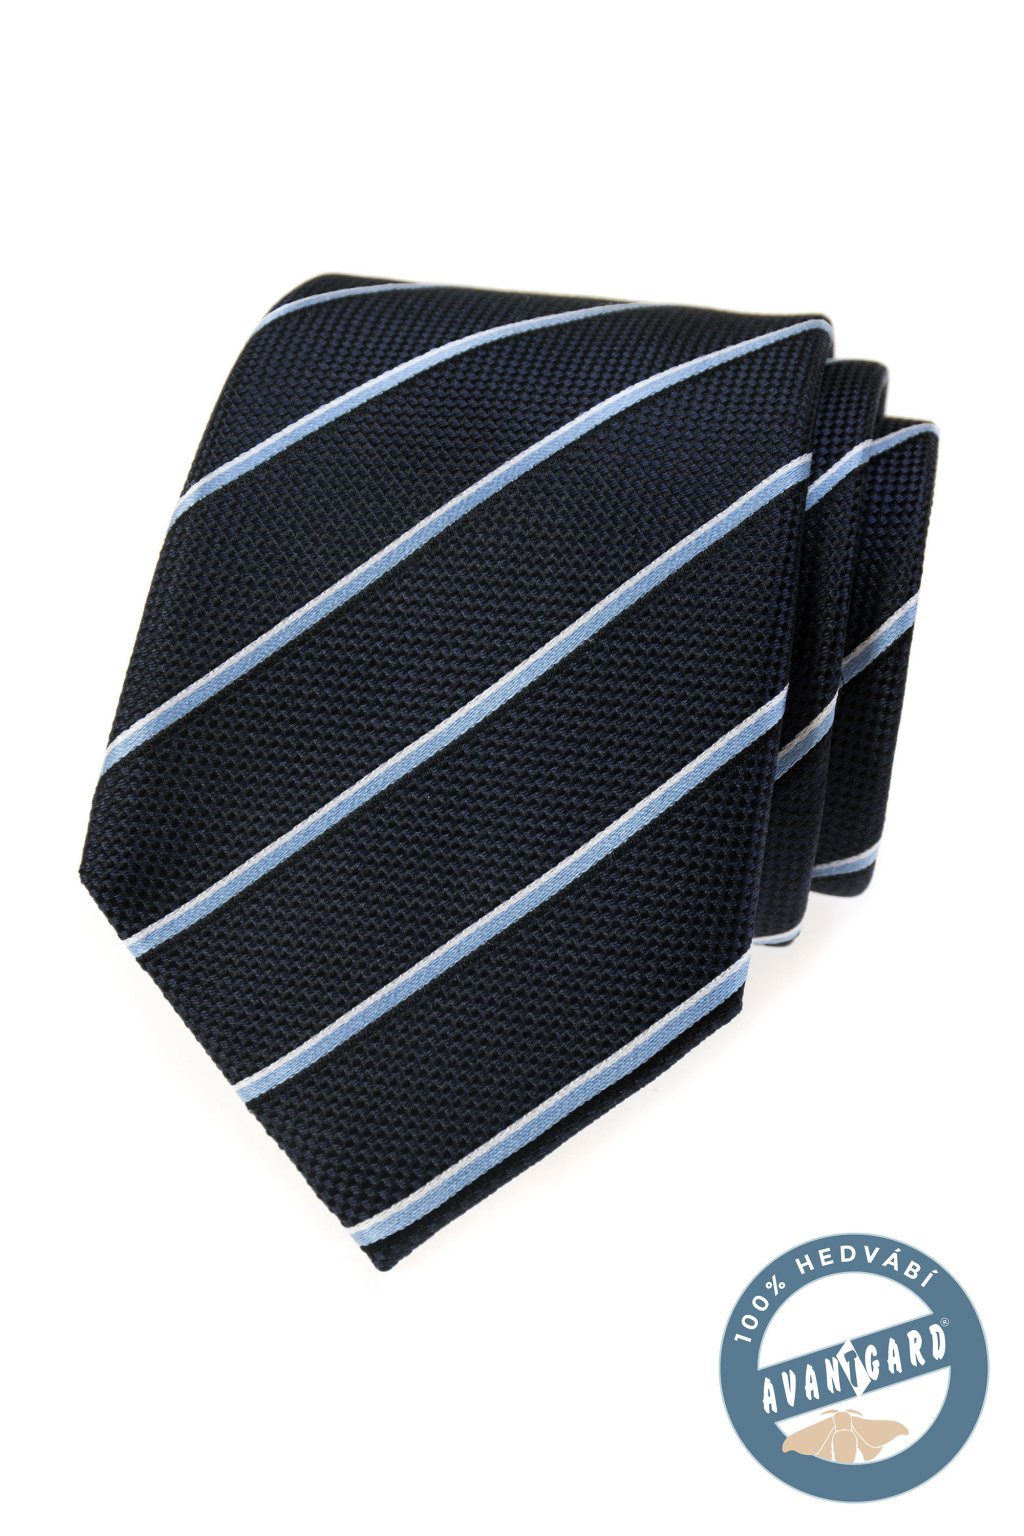 Tmavě modrá hedvábná kravata s proužkem 621 - 7720